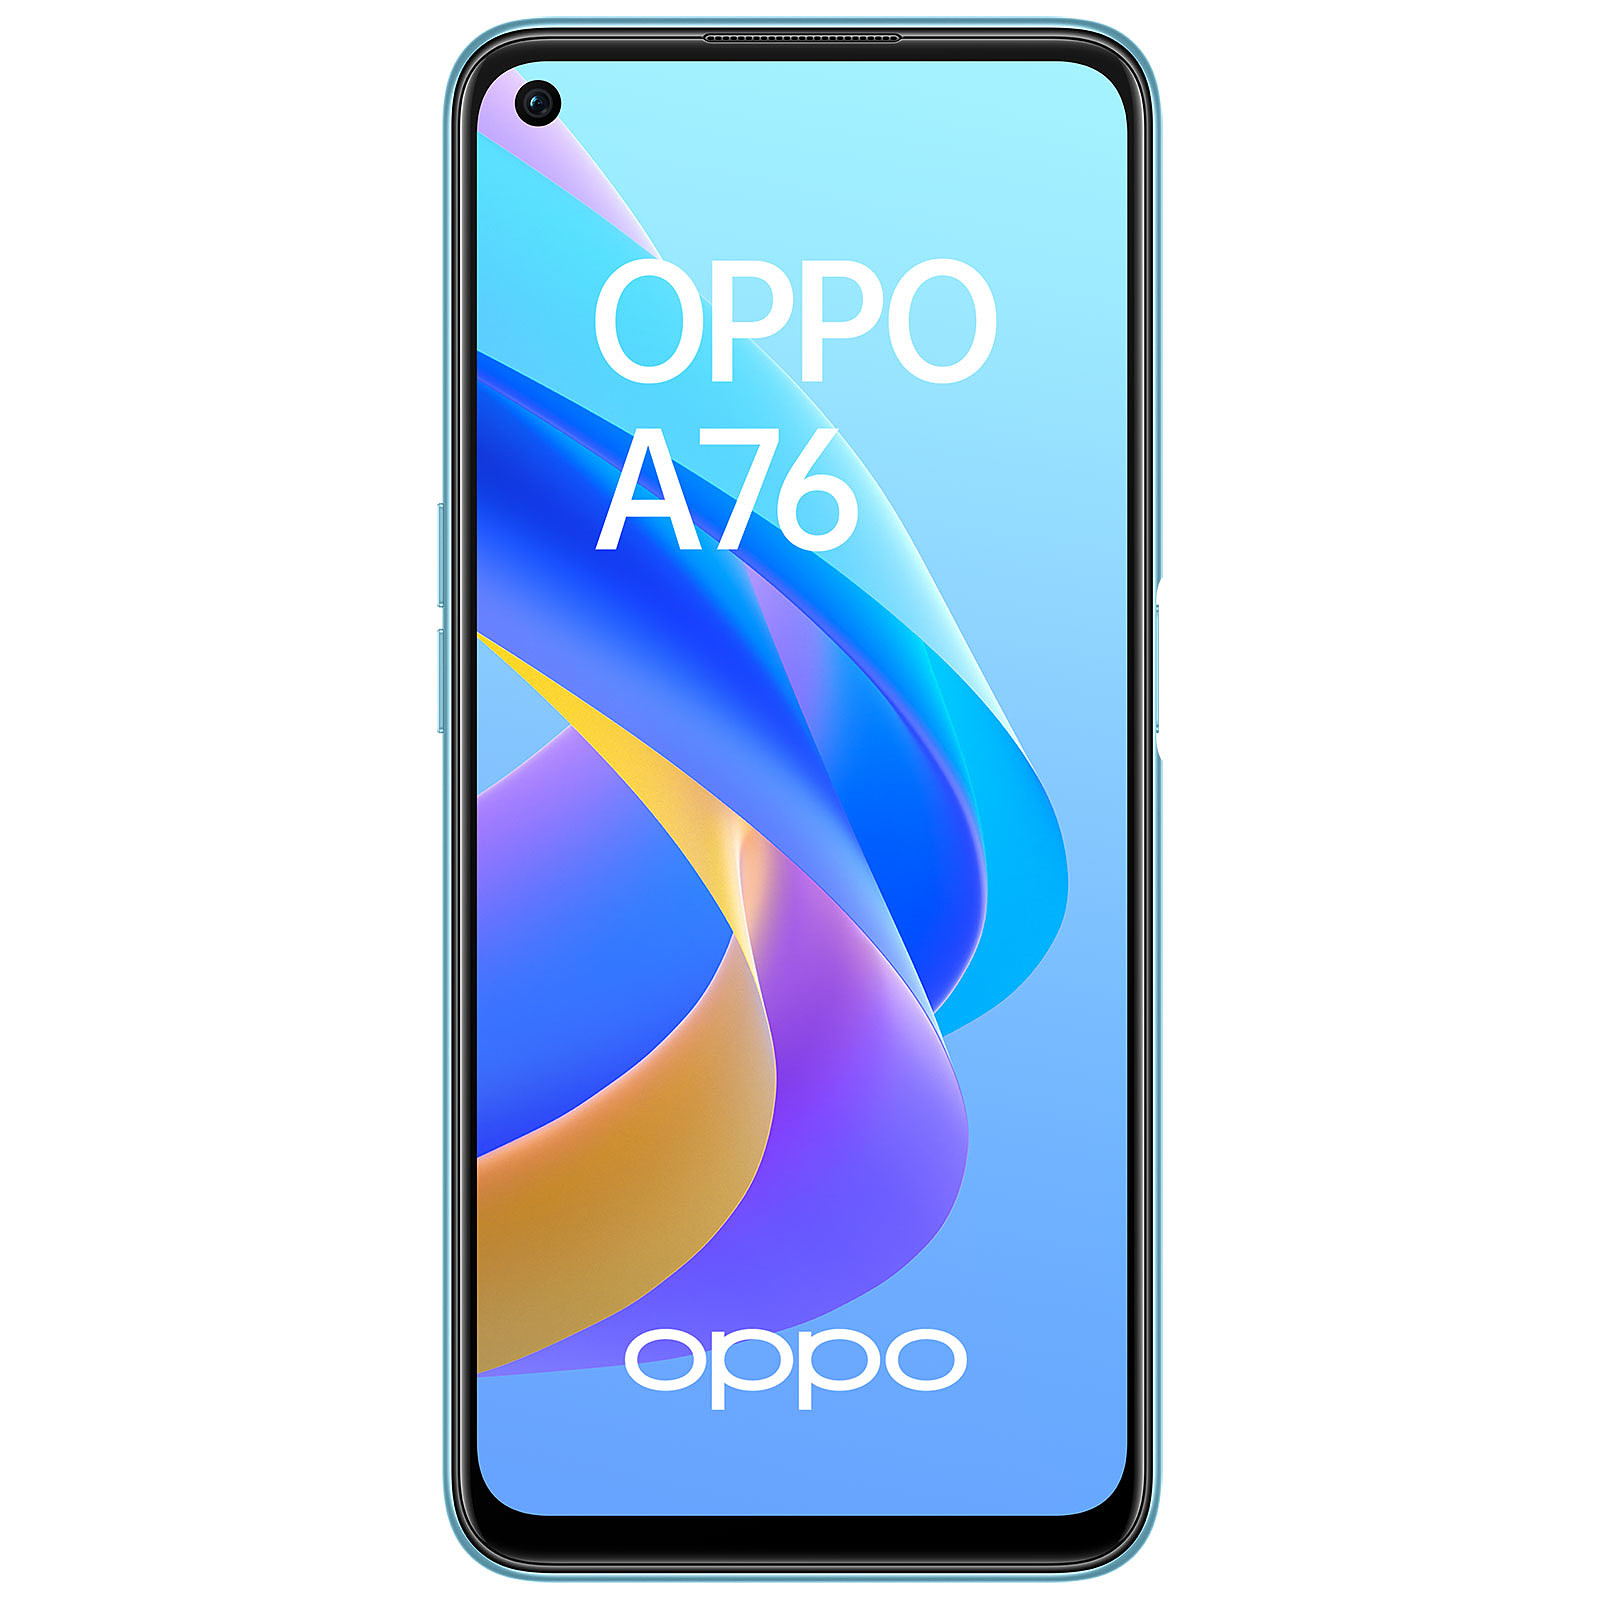 OPPO A76 Bleu atoile - Mobile & smartphone OPPO